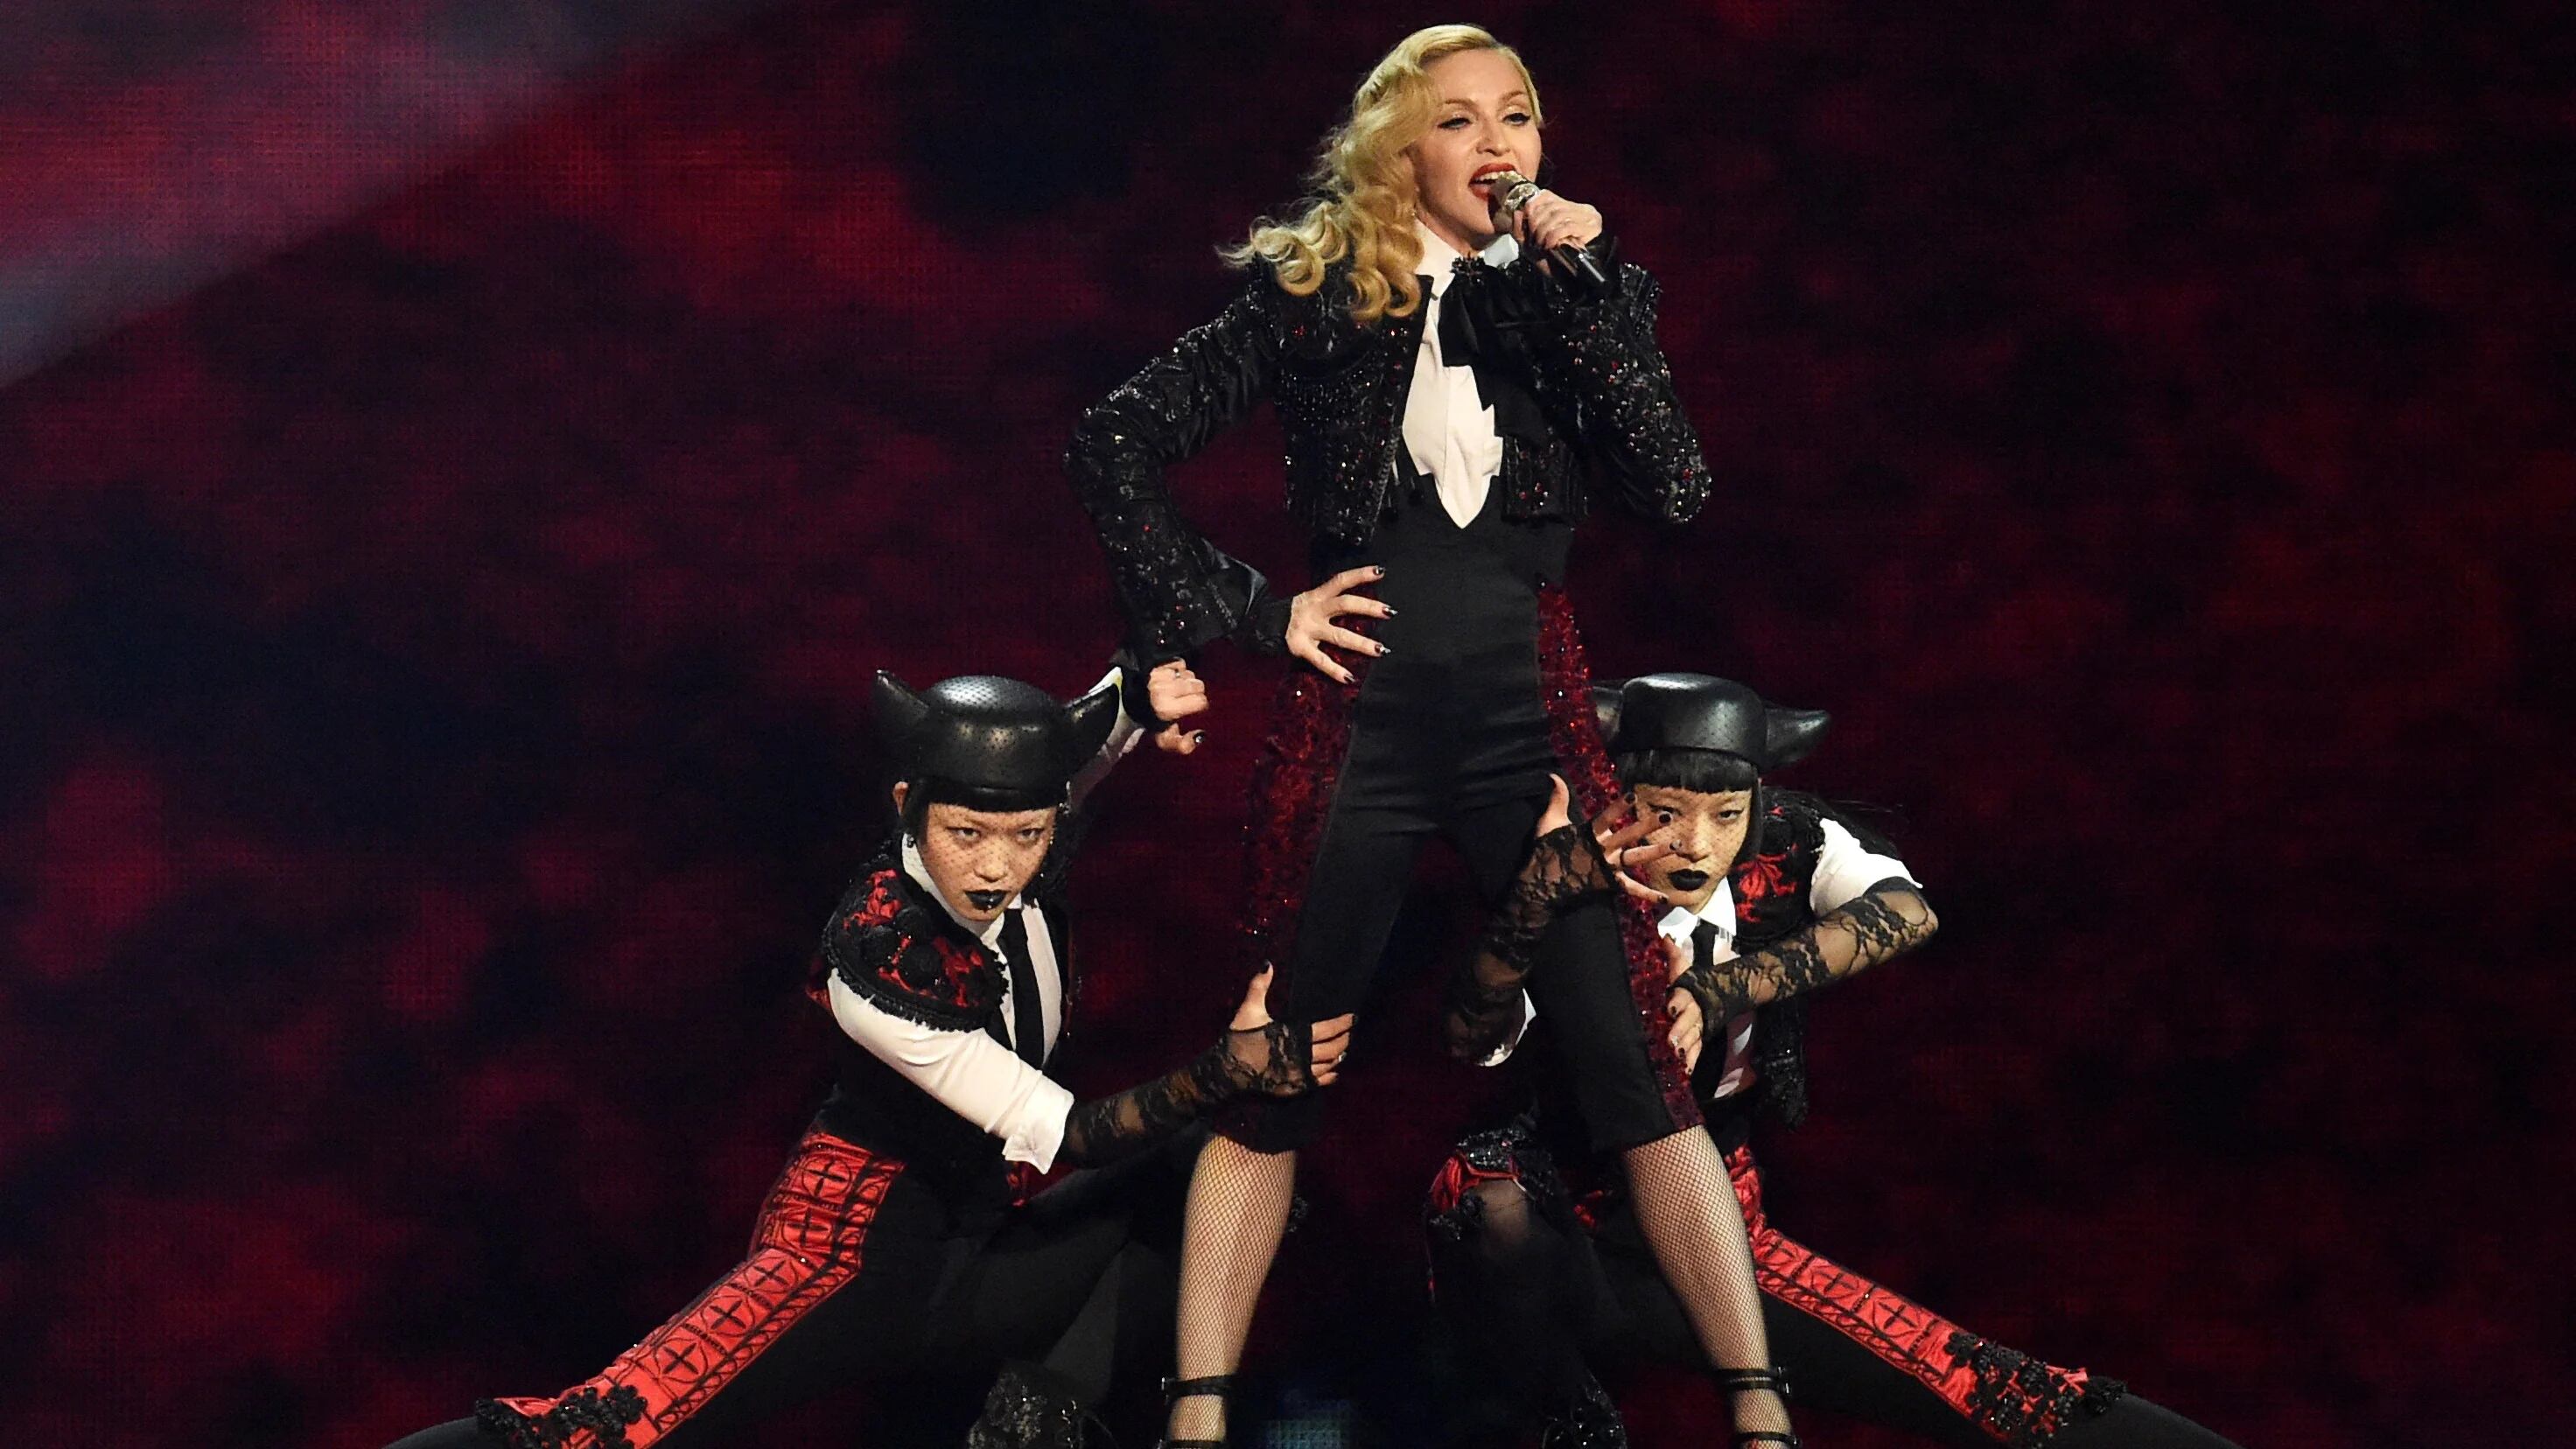 Debido a las complicaciones de su salud, que la llevaron a estar internada varios días, 'The Celebration Tour' de Madonna será reprogramado. REUTERS/Toby Melville/File Photo